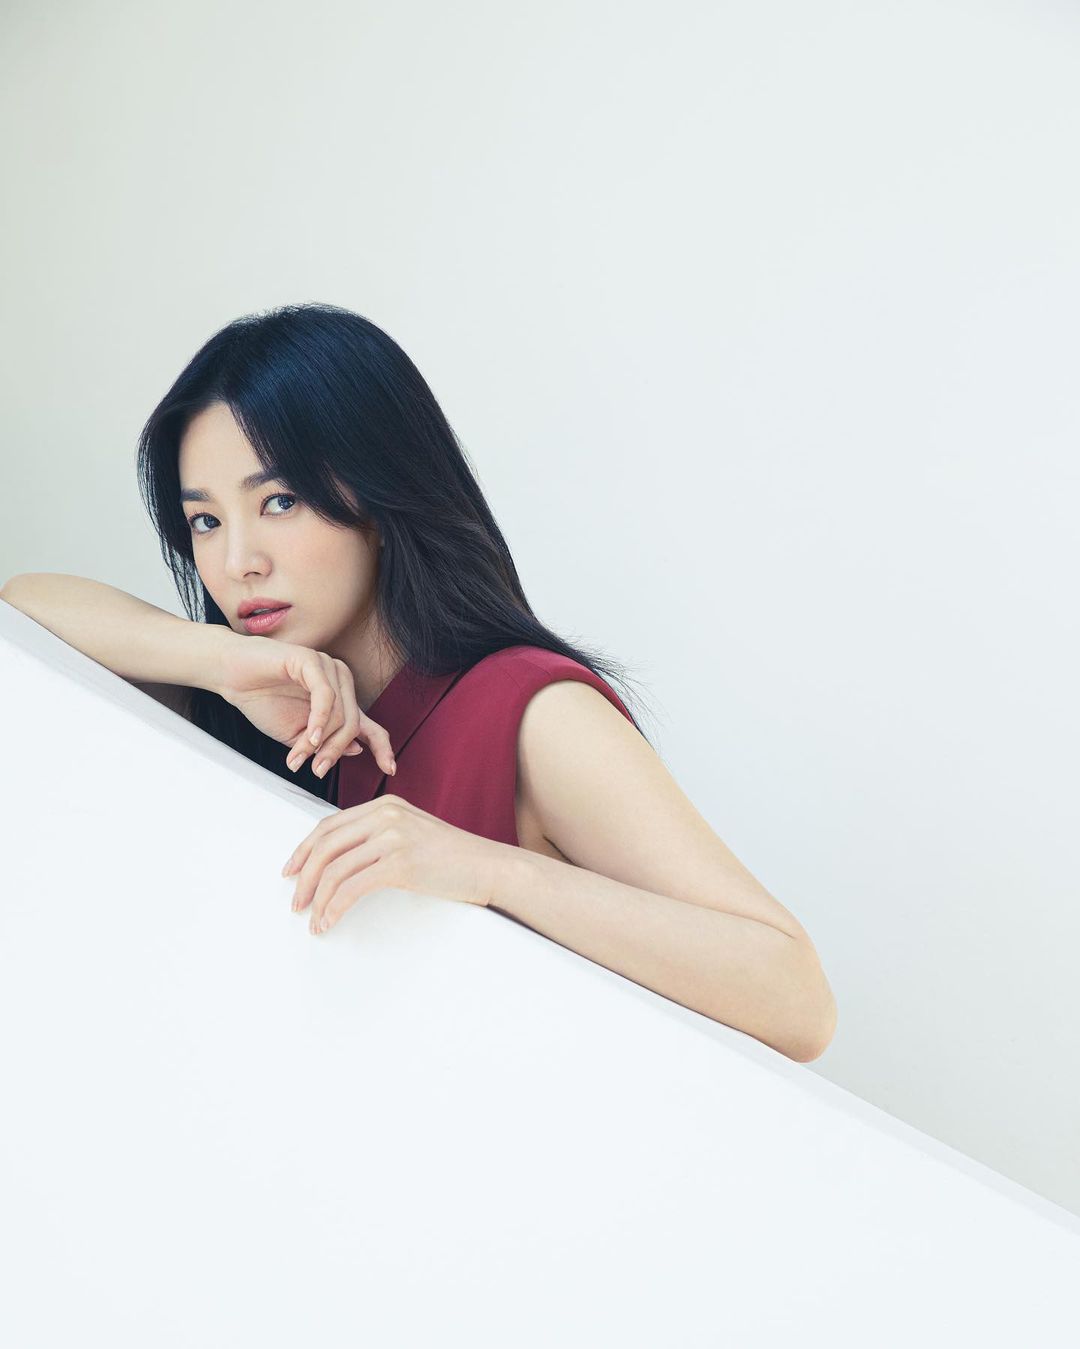 Song Hye Kyo bất ngờ để lộ tha thu: Nữ thần trong làng gái ngoan ngày nào giờ đã lột xác táo bạo rồi? - Ảnh 5.